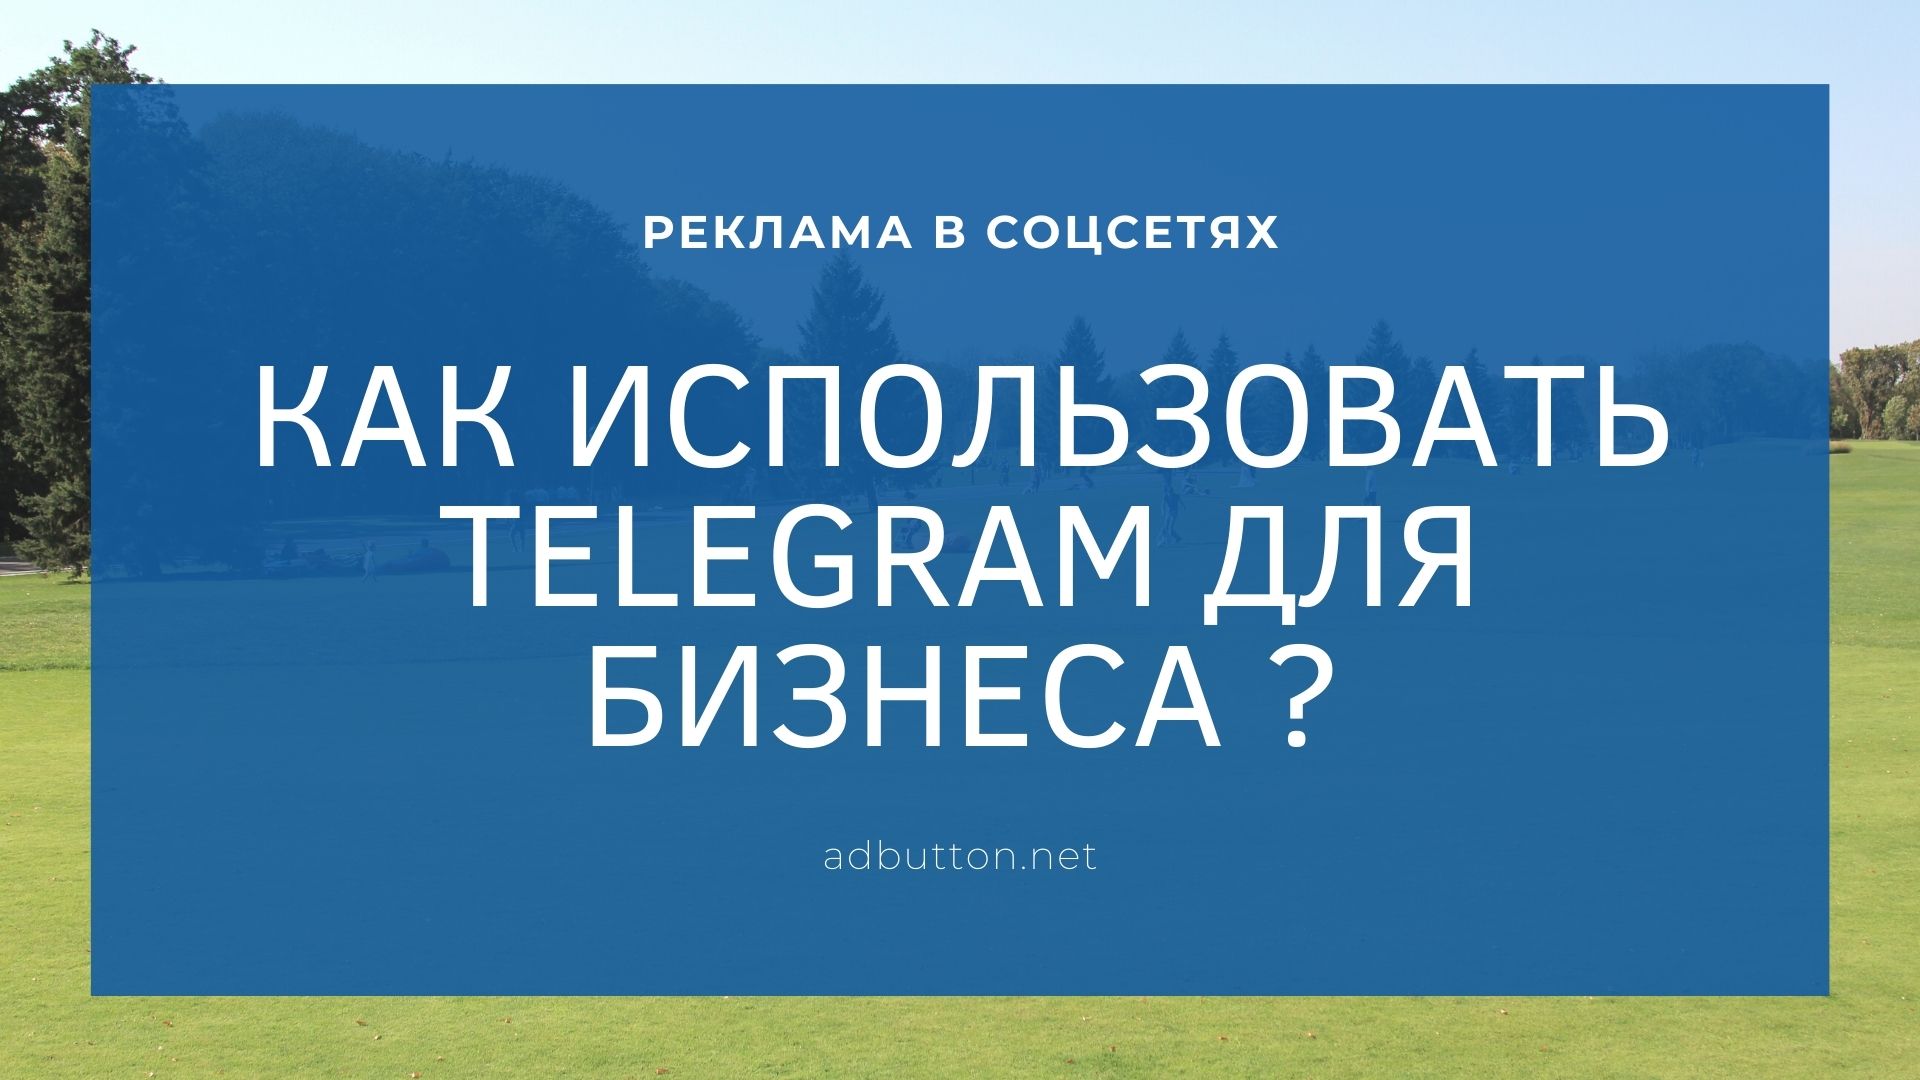 Telegram для бизнеса: секретный чат в мобильном приложении